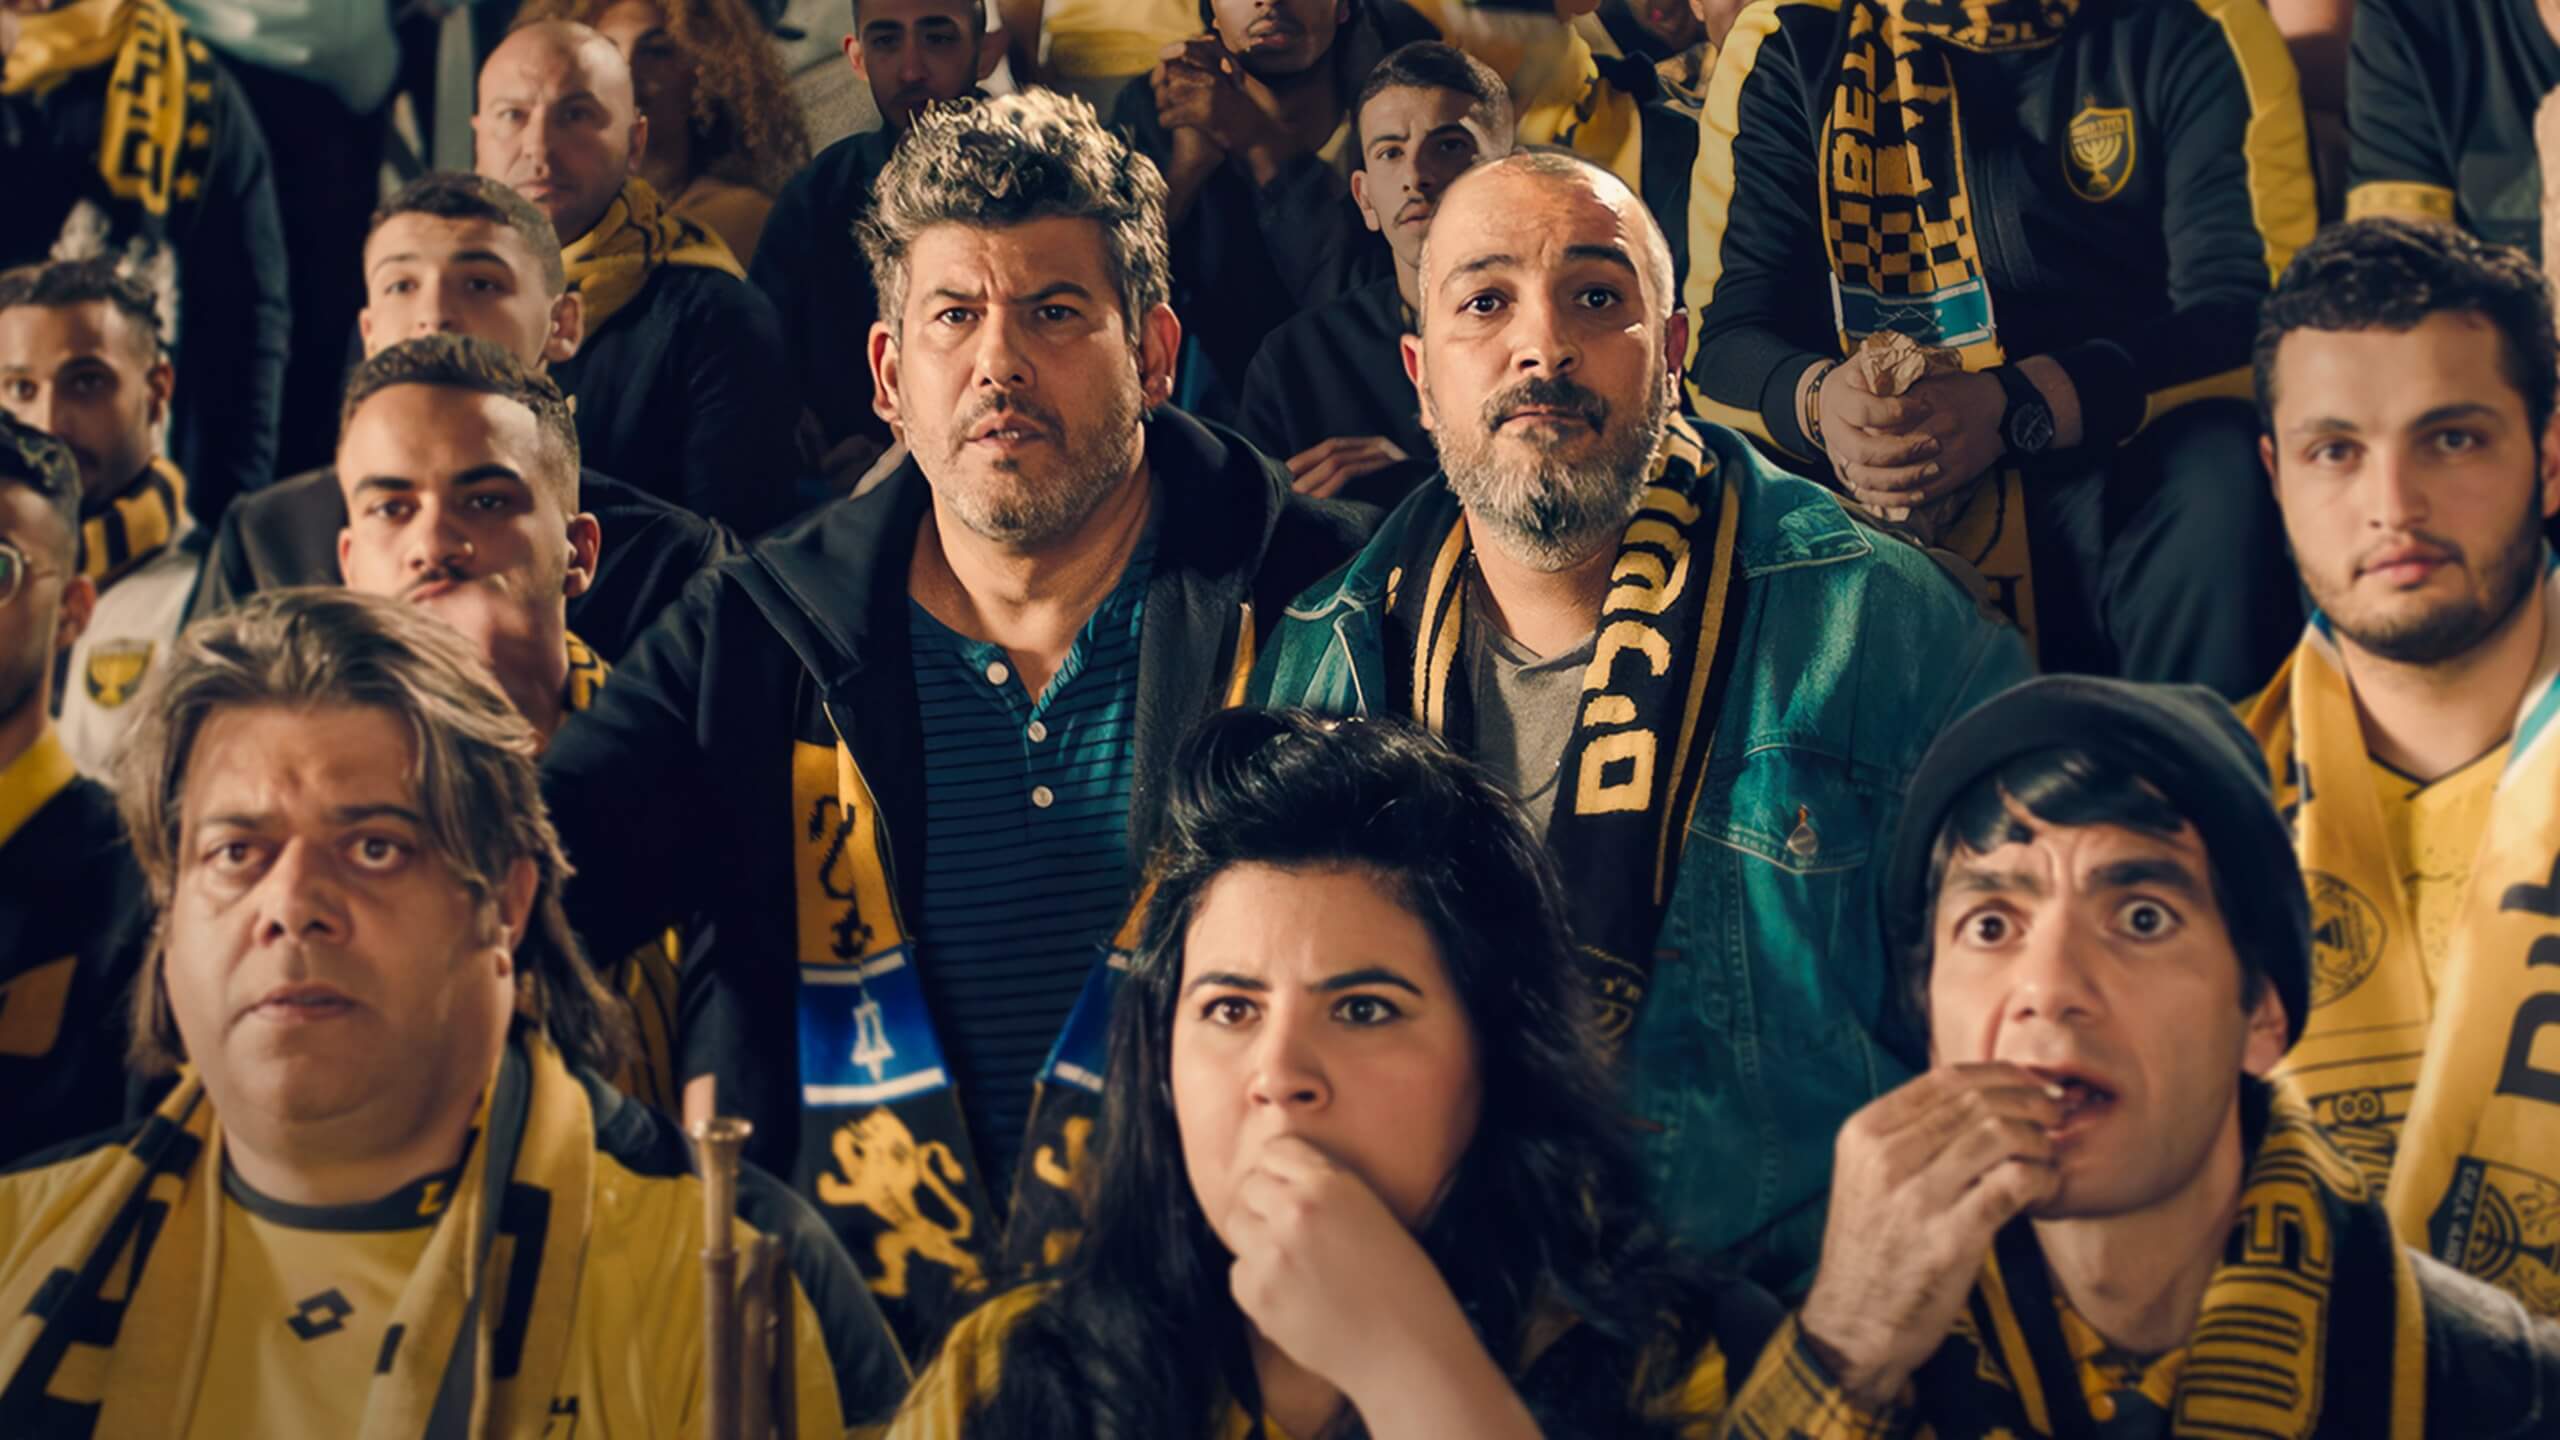 العنصرية المعادية للعرب هي صديق غير معلن في برنامج Netflix الإسرائيلي الجديد حول مشجعي كرة القدم المسعورين – The Forward